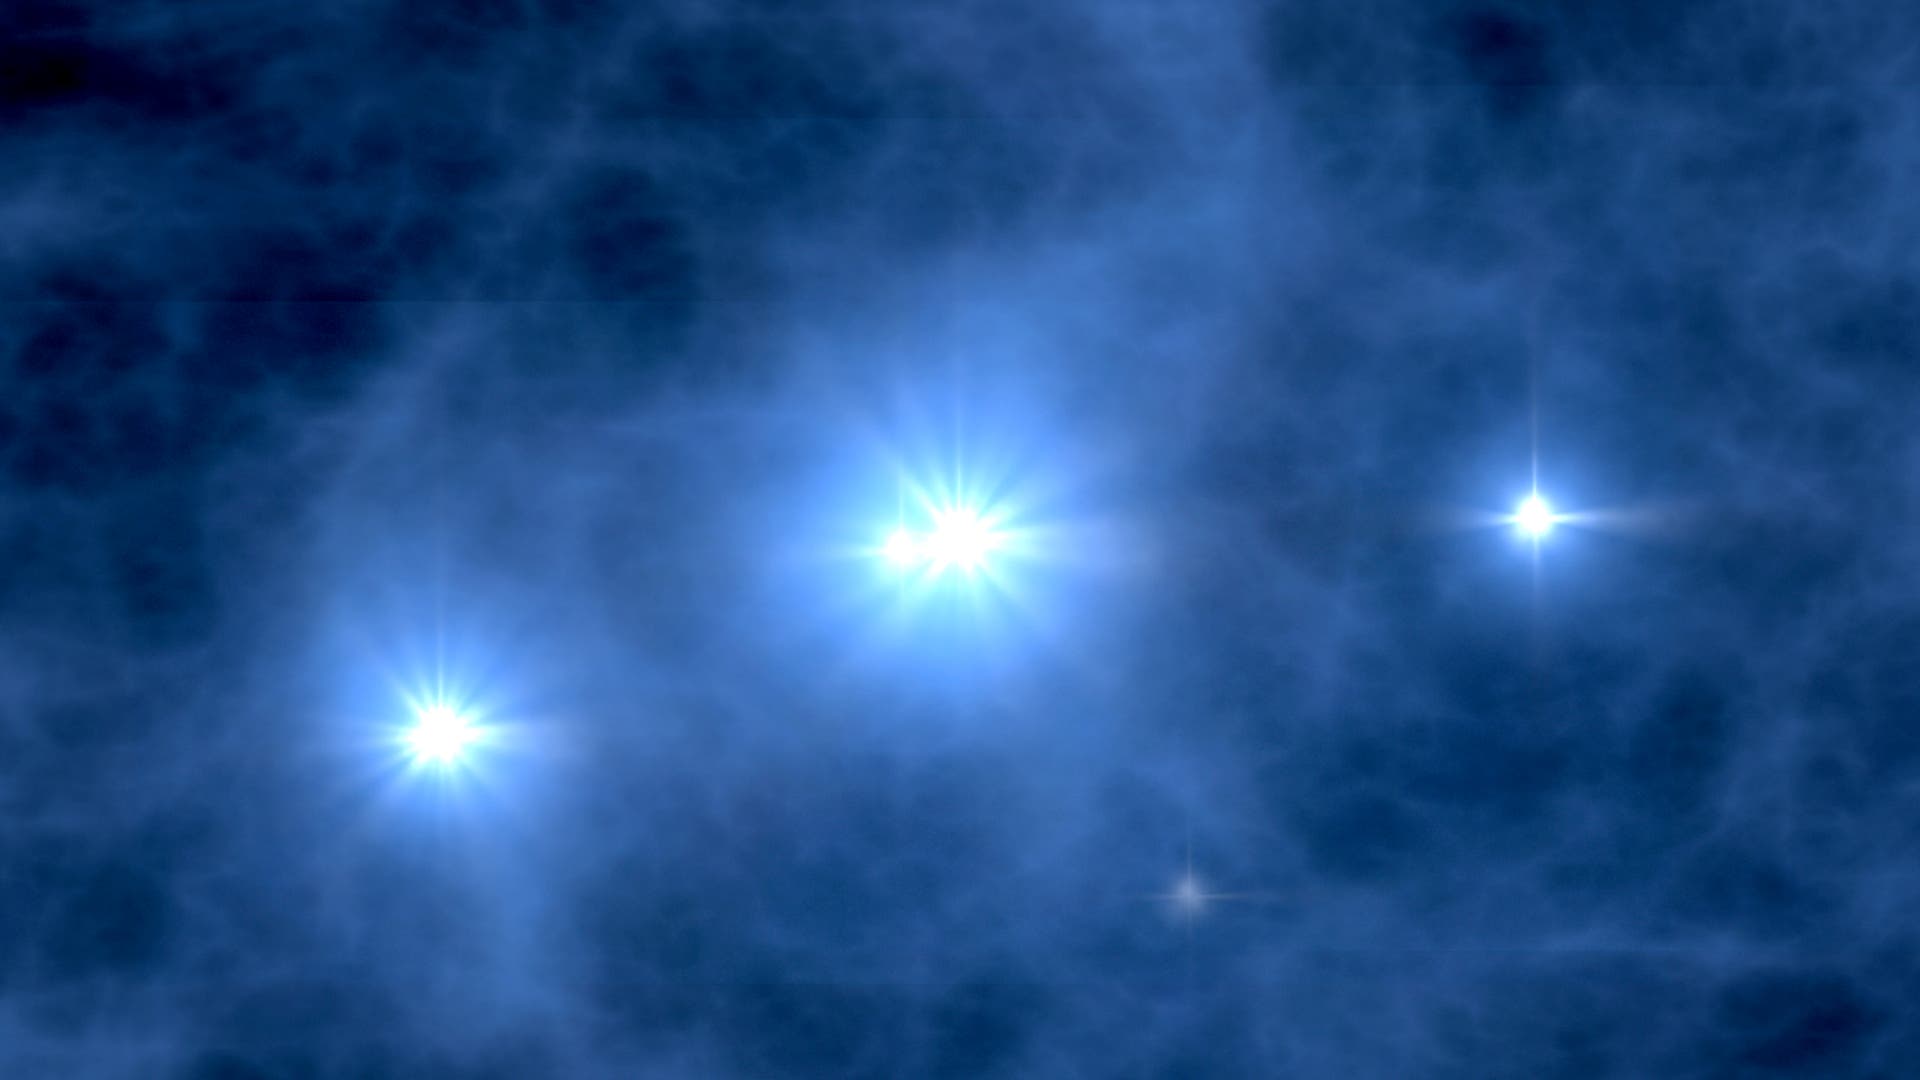 Ontdekking met de James Webb-telescoop – Spectrumwetenschap